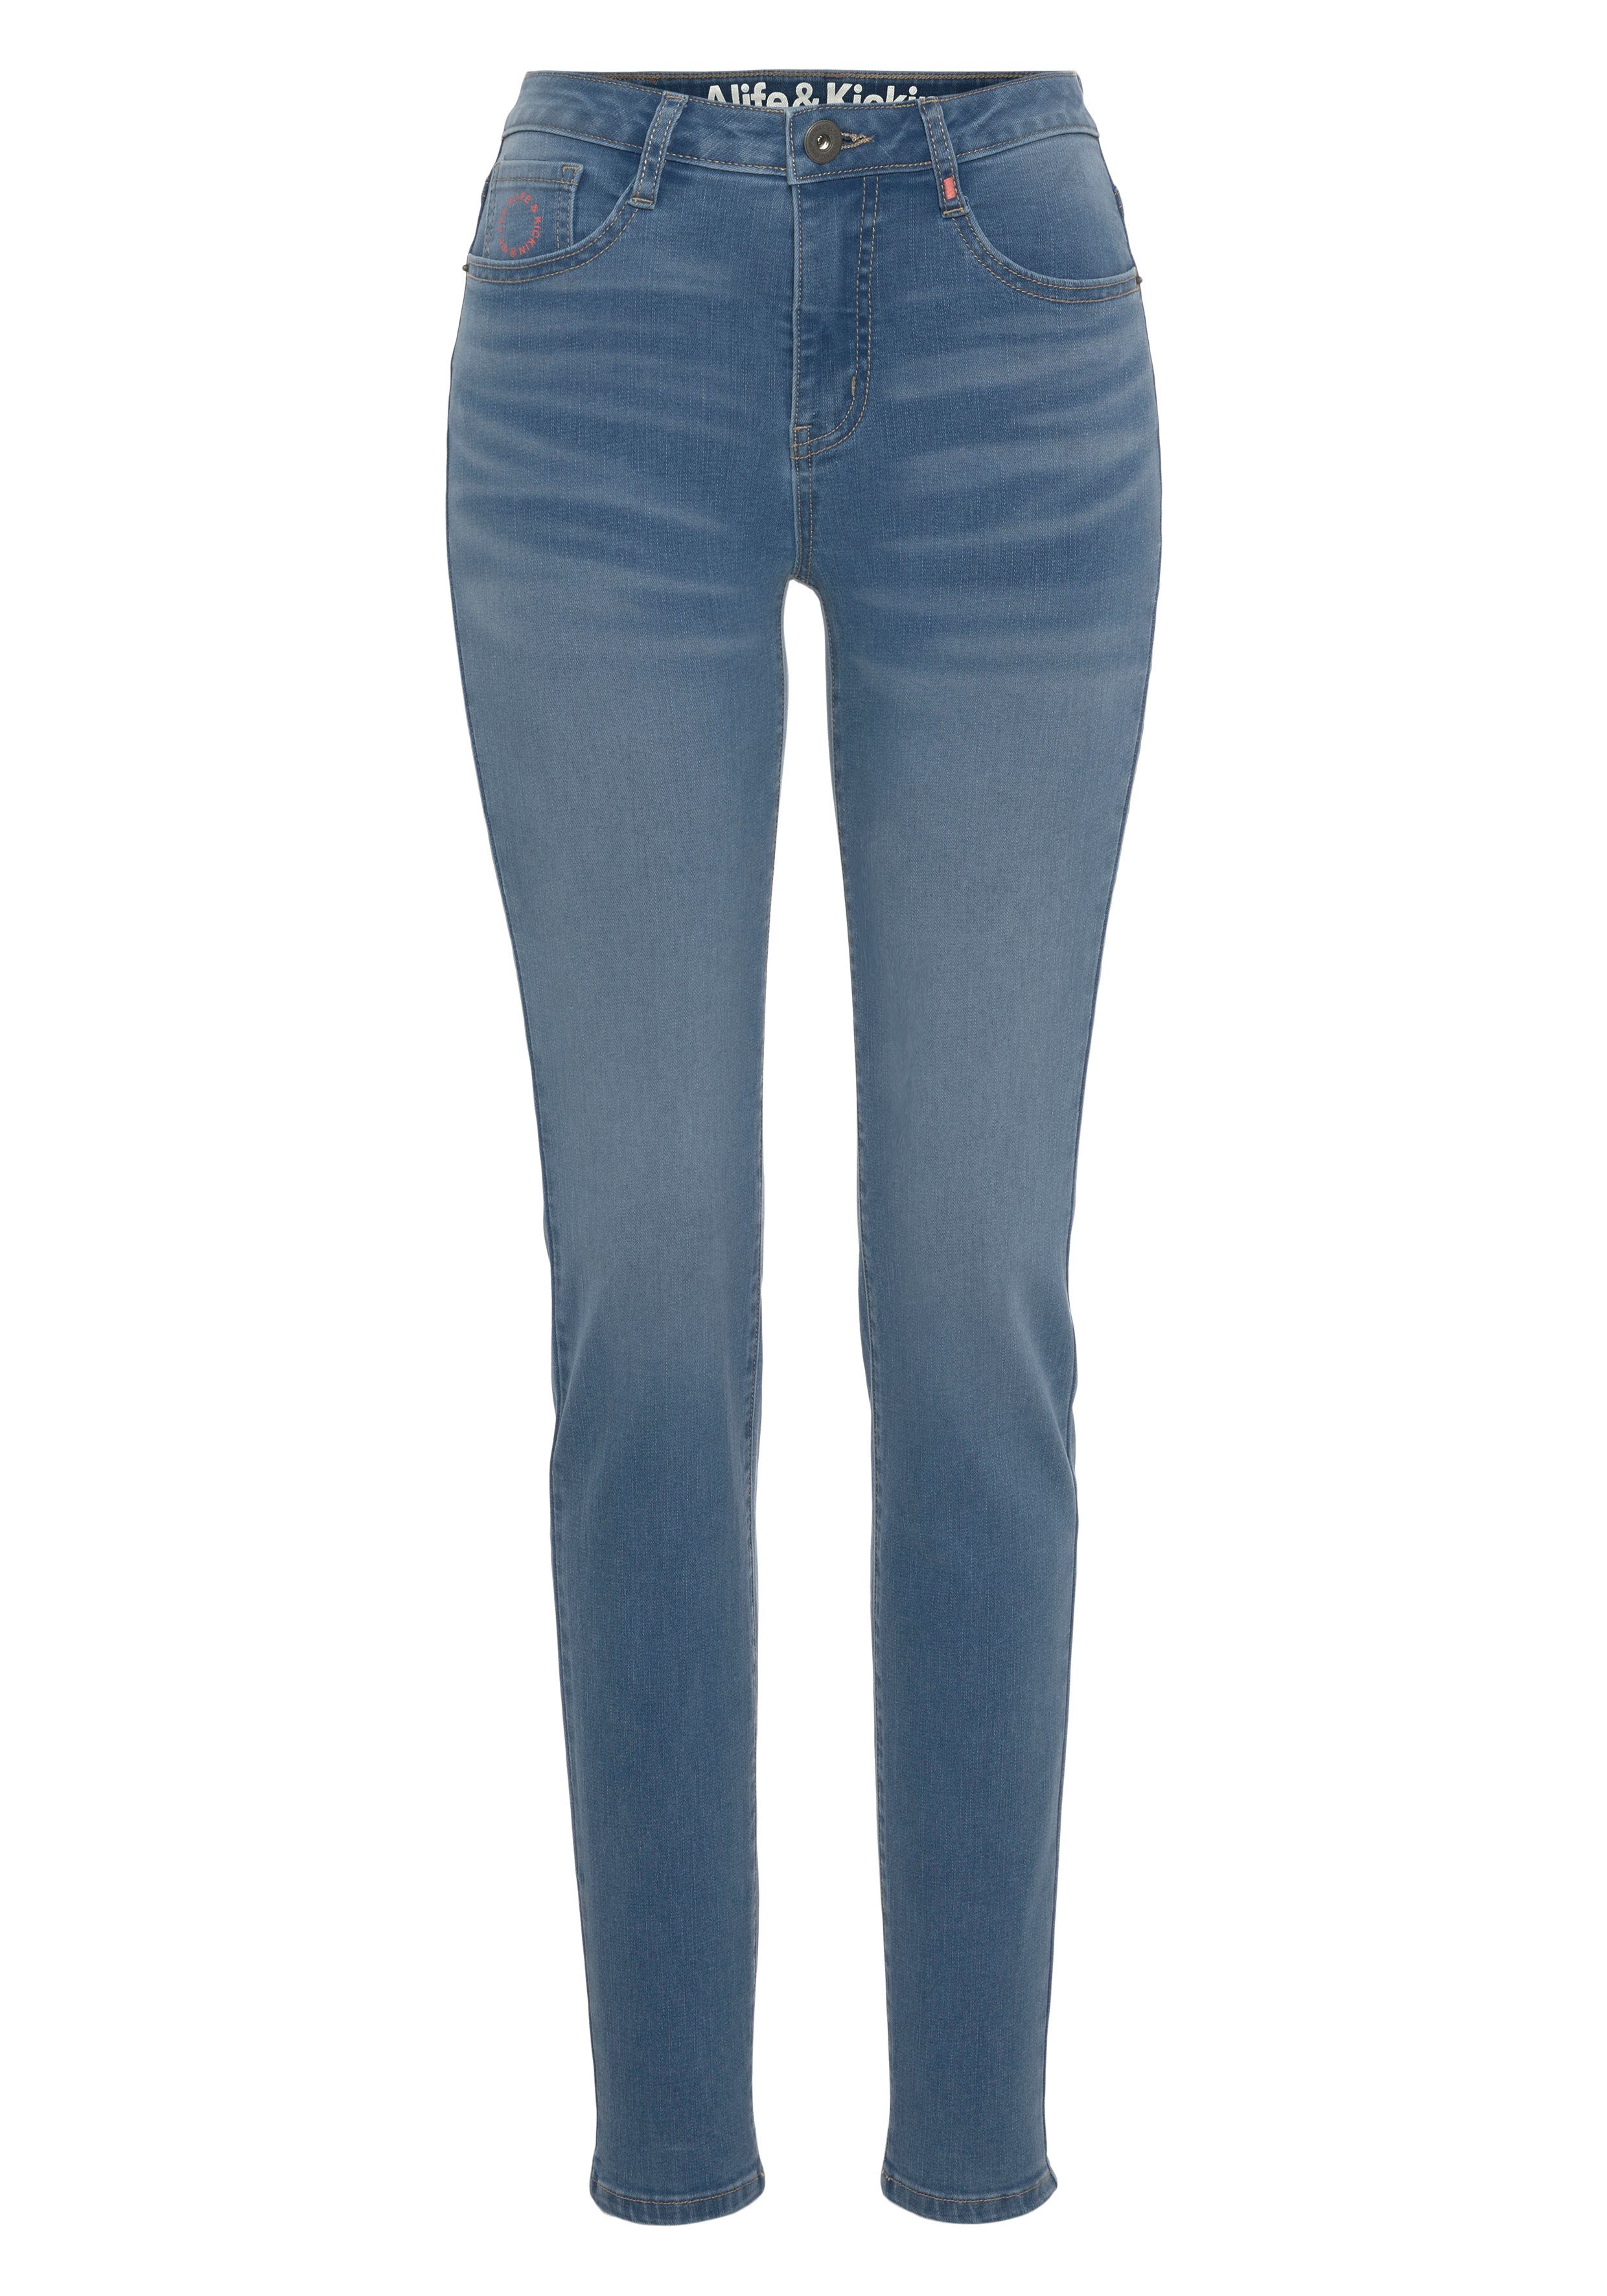 Alife & NolaAK High-waist-Jeans NEUE used Kickin Slim-Fit blue KOLLEKTION